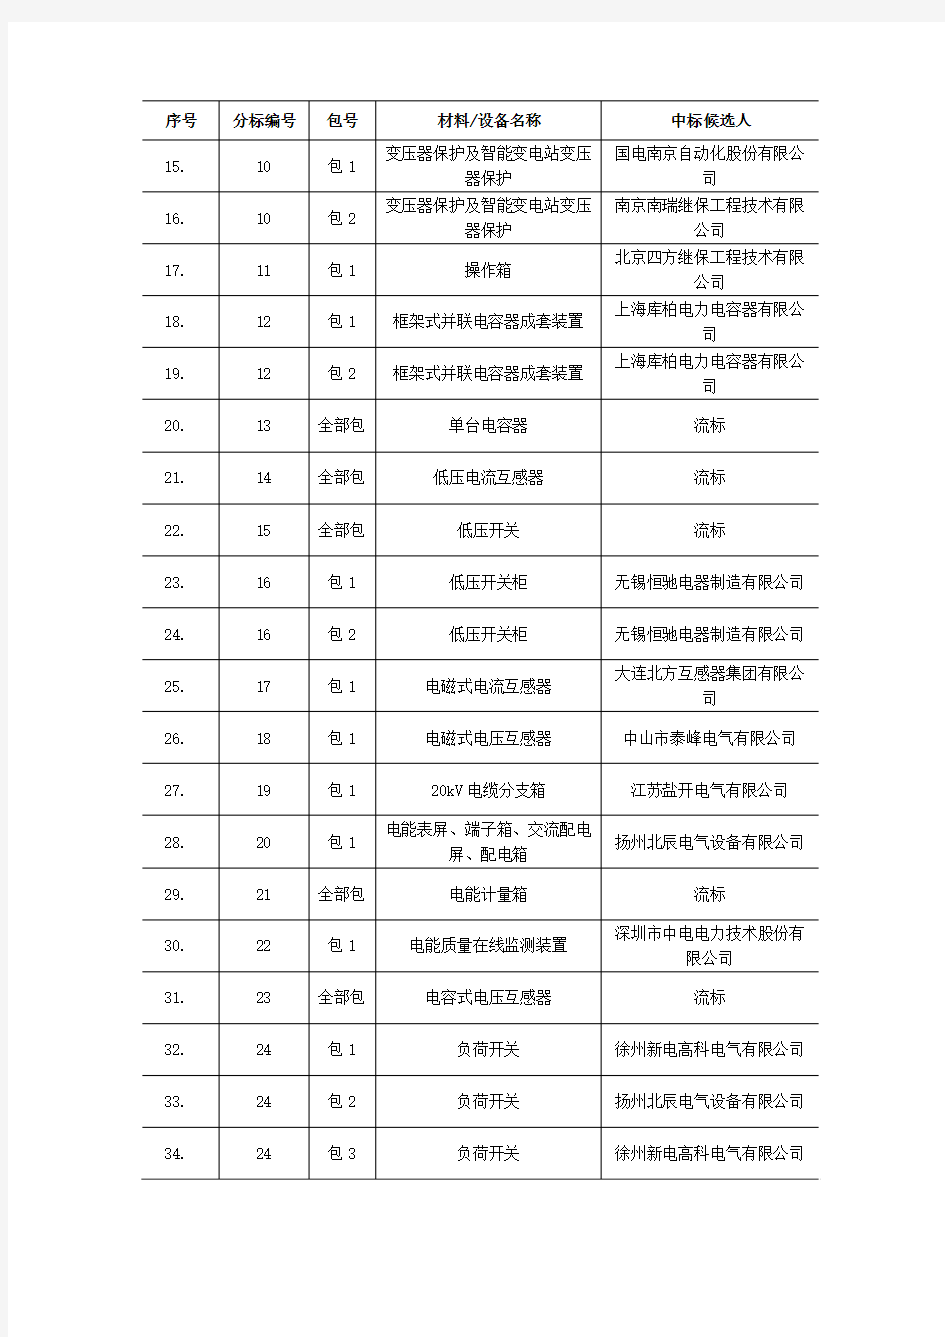 _国网江苏省电力公司2012年第三批中标人名单公示